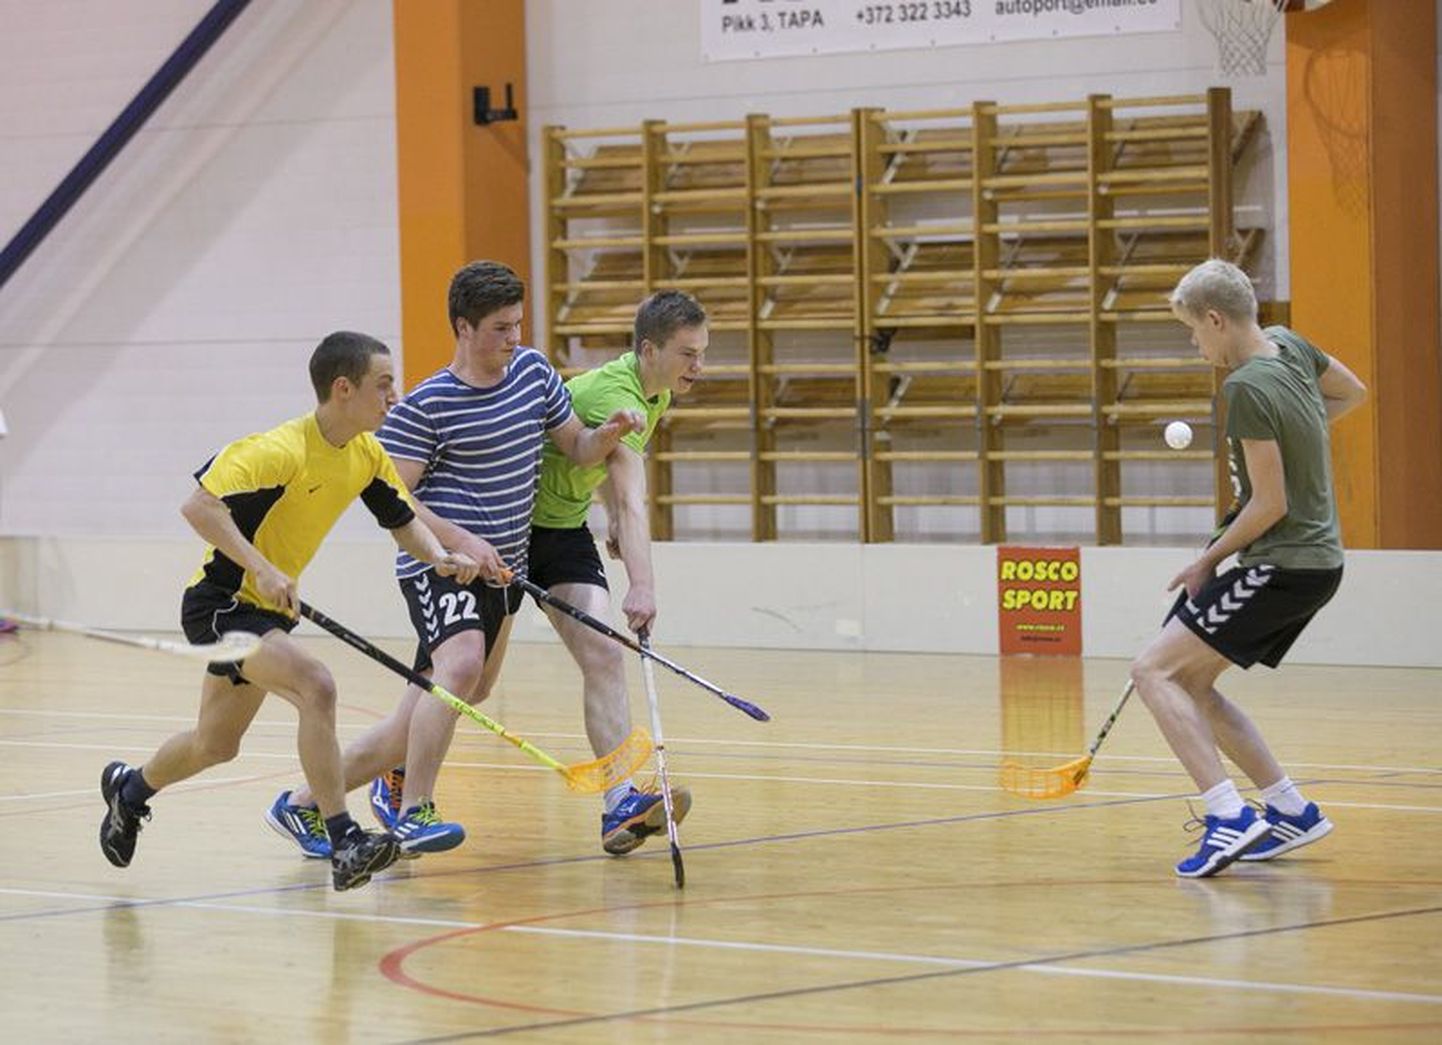 Spordiklubi Jäneda saalihokimängijad treenivad nii Tapal kui Jänedal. Kiire ja tehniline mäng võtab kiiresti võhmale.